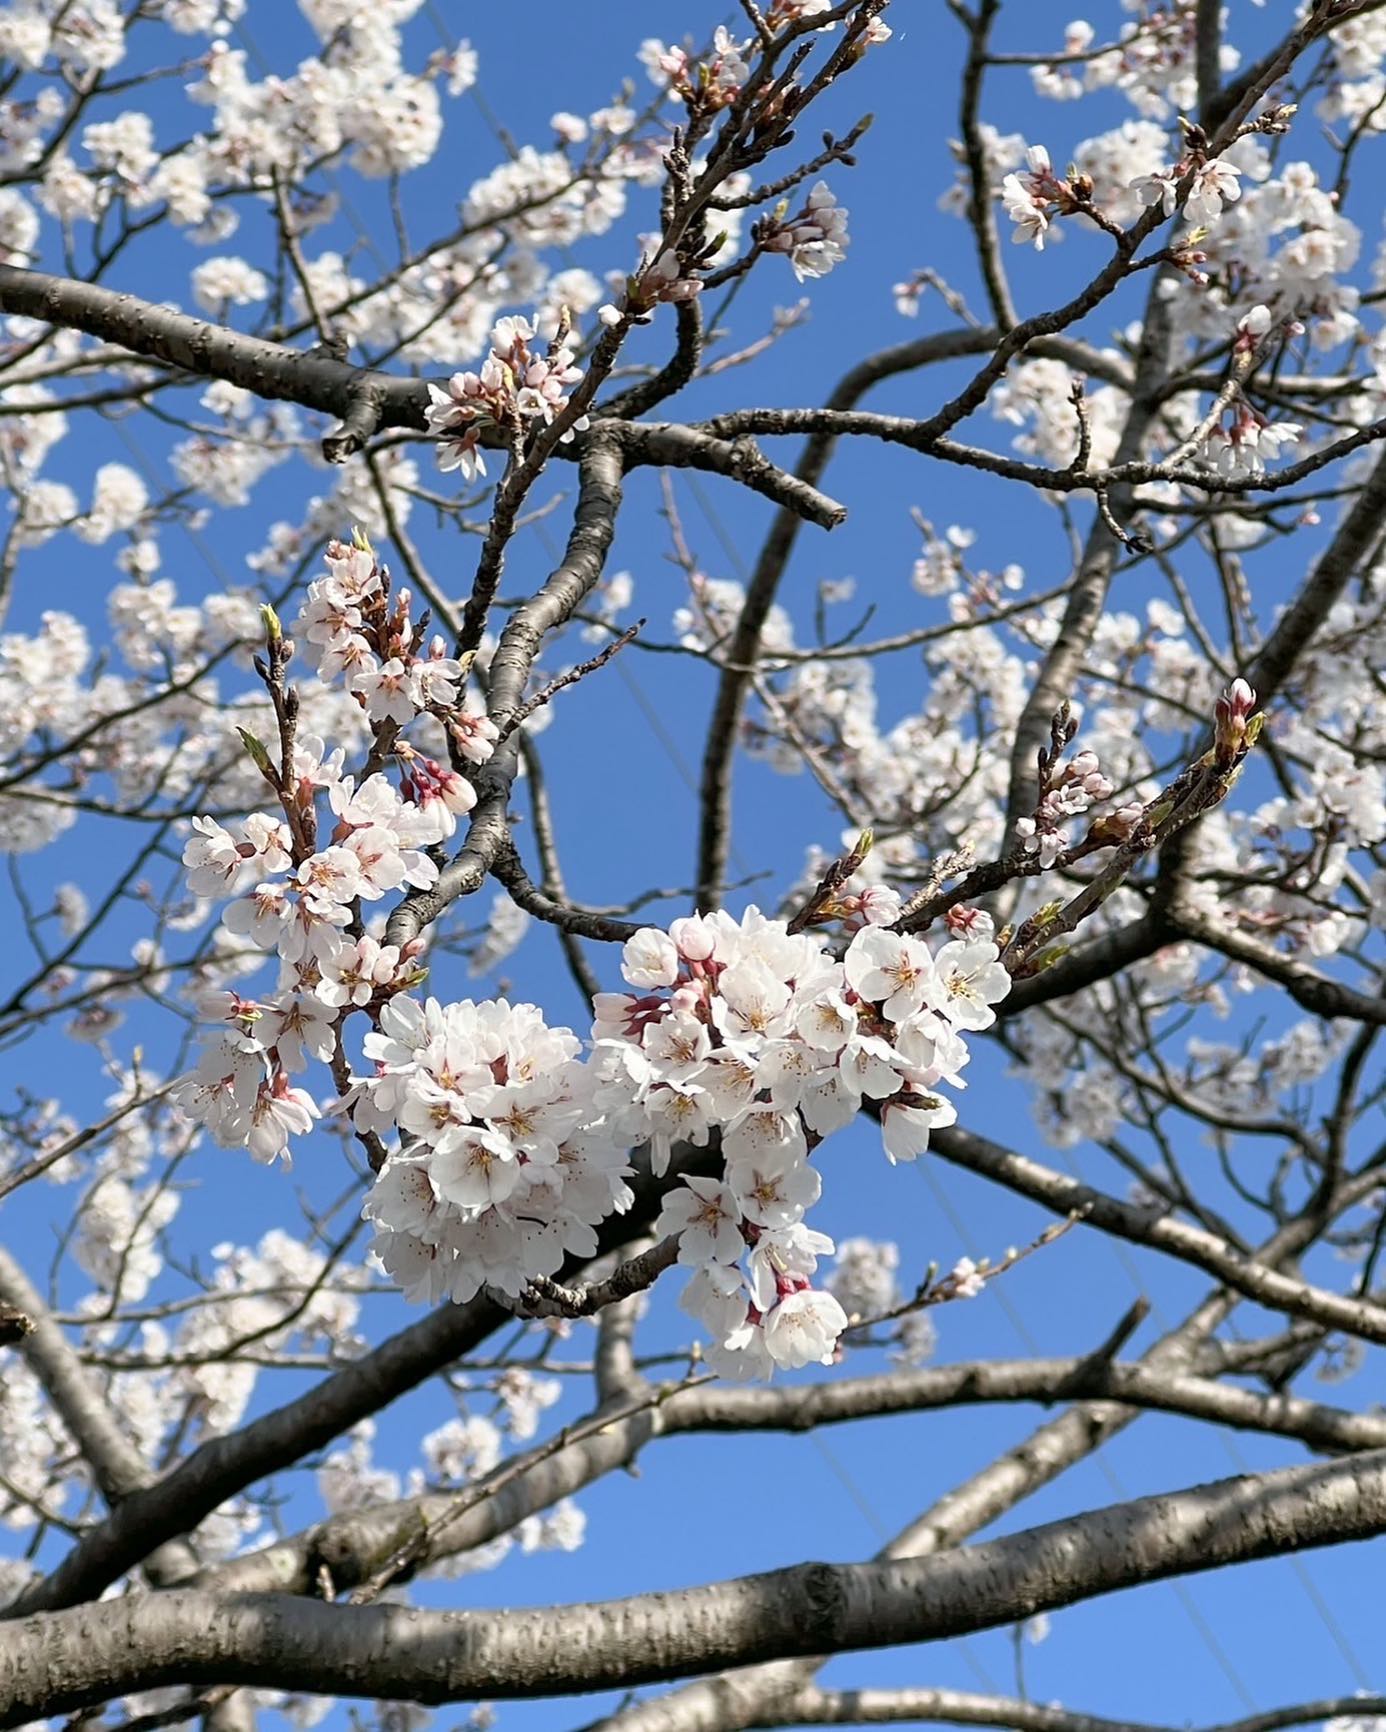 春はいいなぁ♪桜の花が咲き始めると思わずほわっとしてきますよね！町内の桜並木に毎年一本だけ早く咲く桜があるんです！みなさんも桜の季節楽しんで下さいな🤗#春が来た #桜 #花見